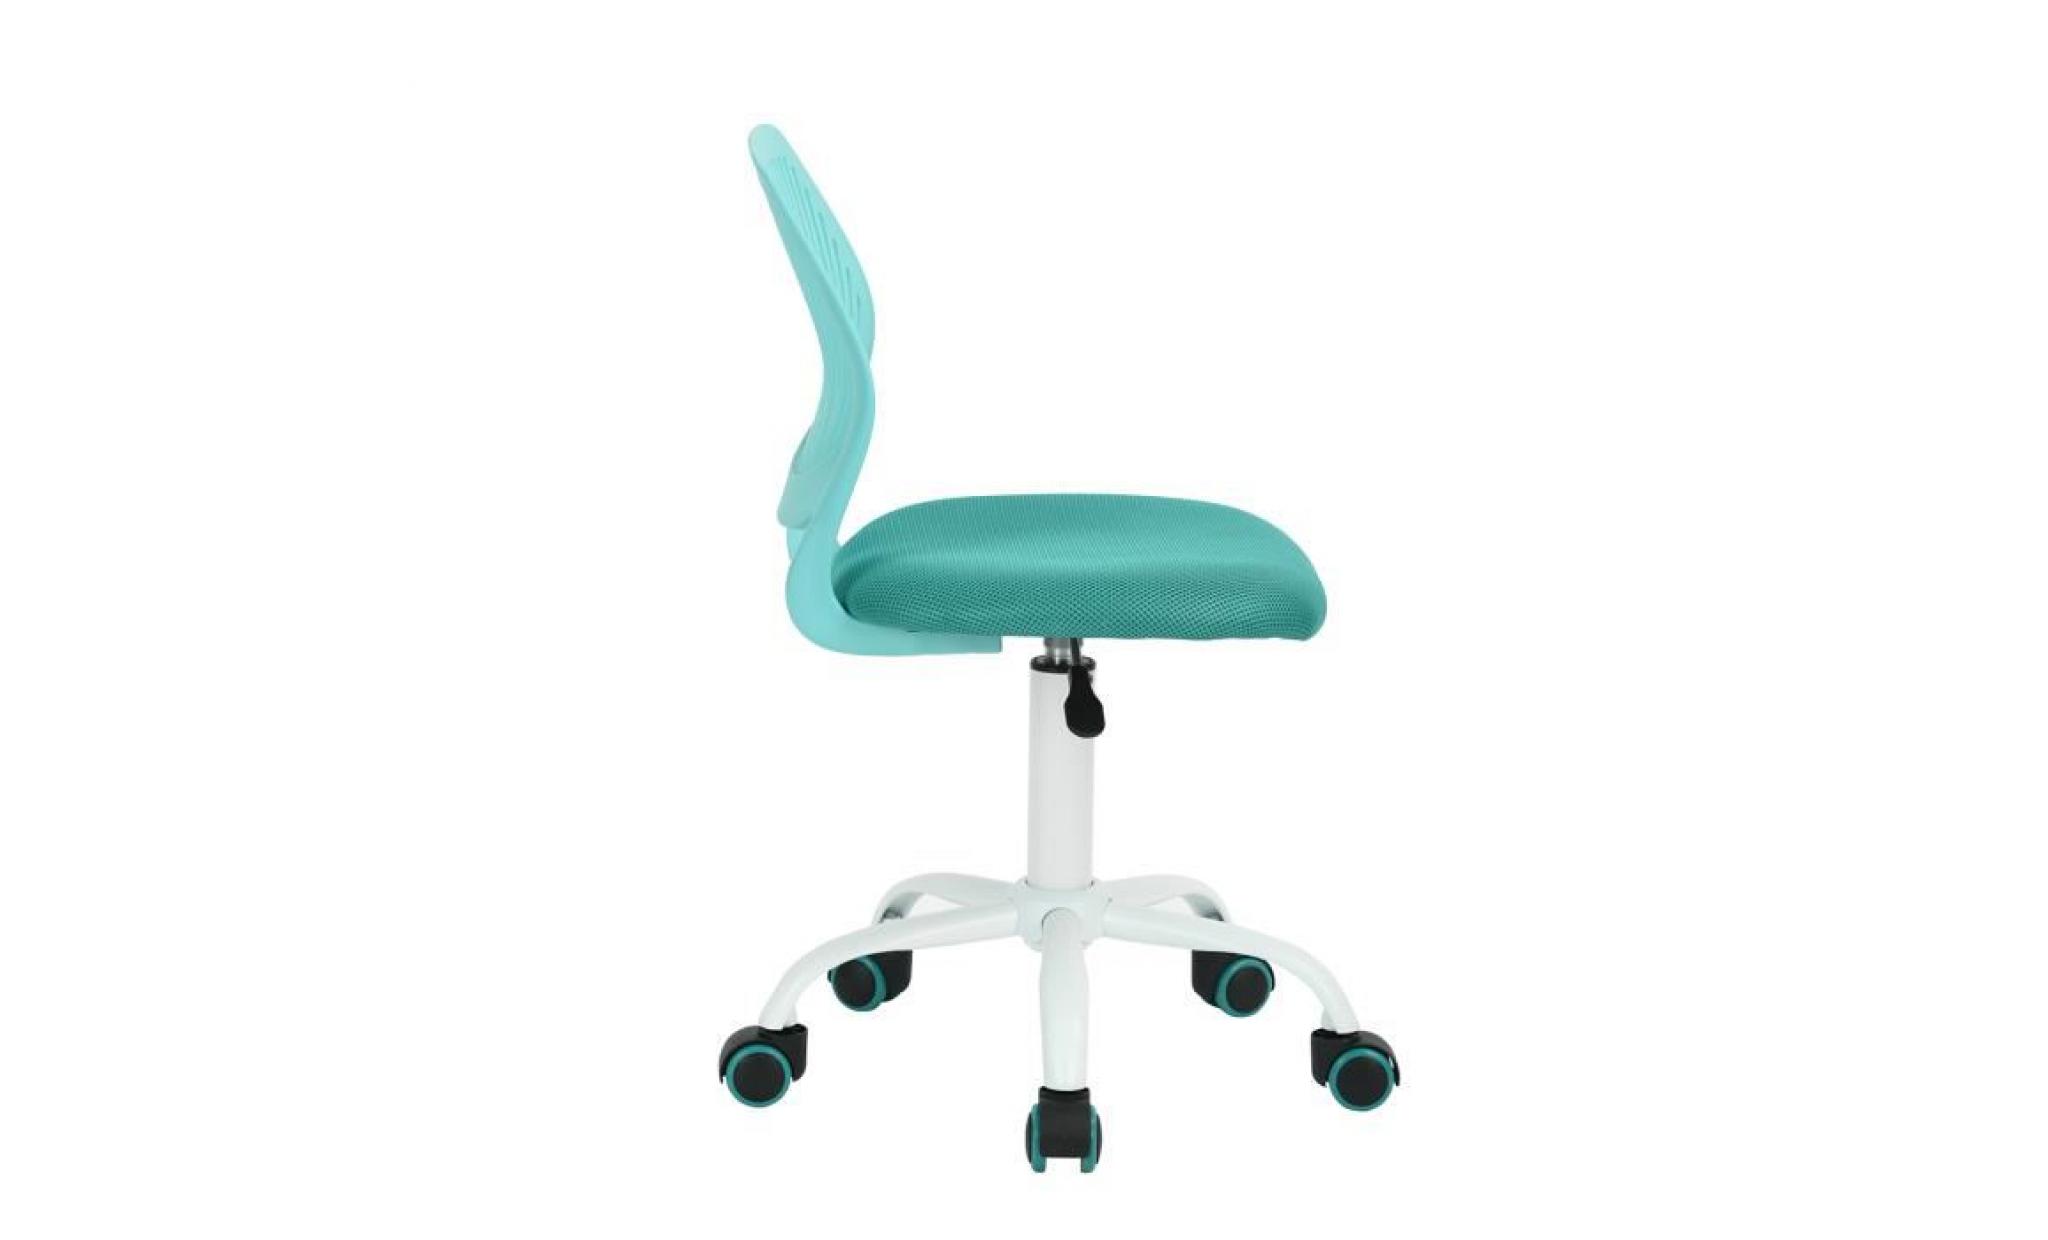 siège chaise de bureau enfant turquoise haute réglable en plastique métal eponge réseau à roulettes pas cher